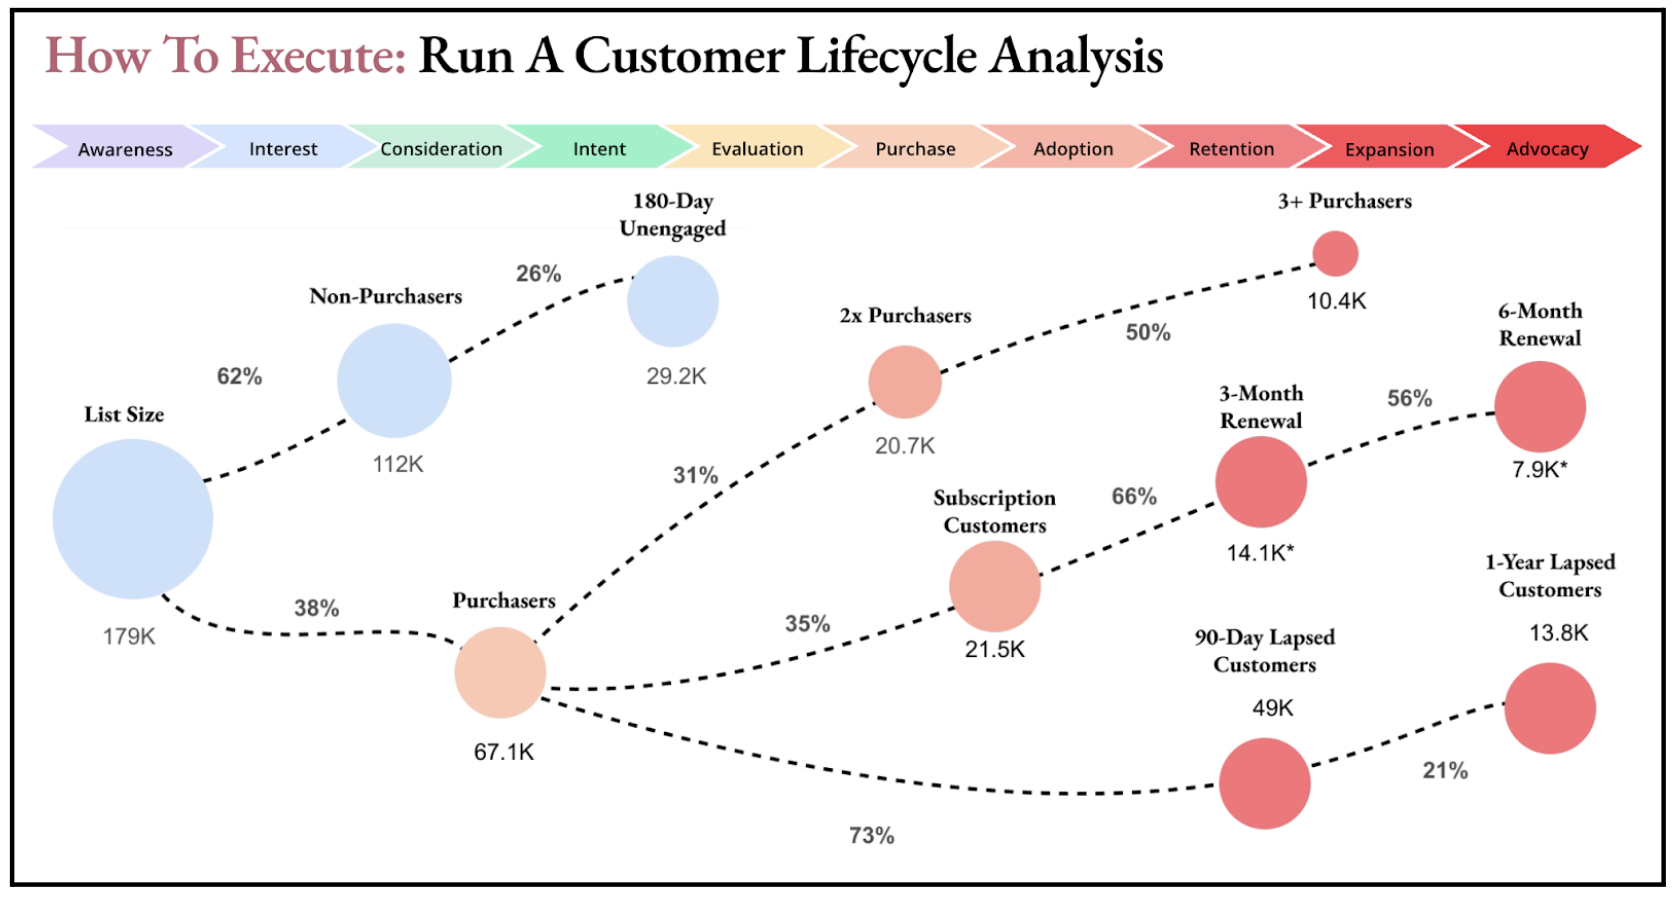 Life Cycle Analysis